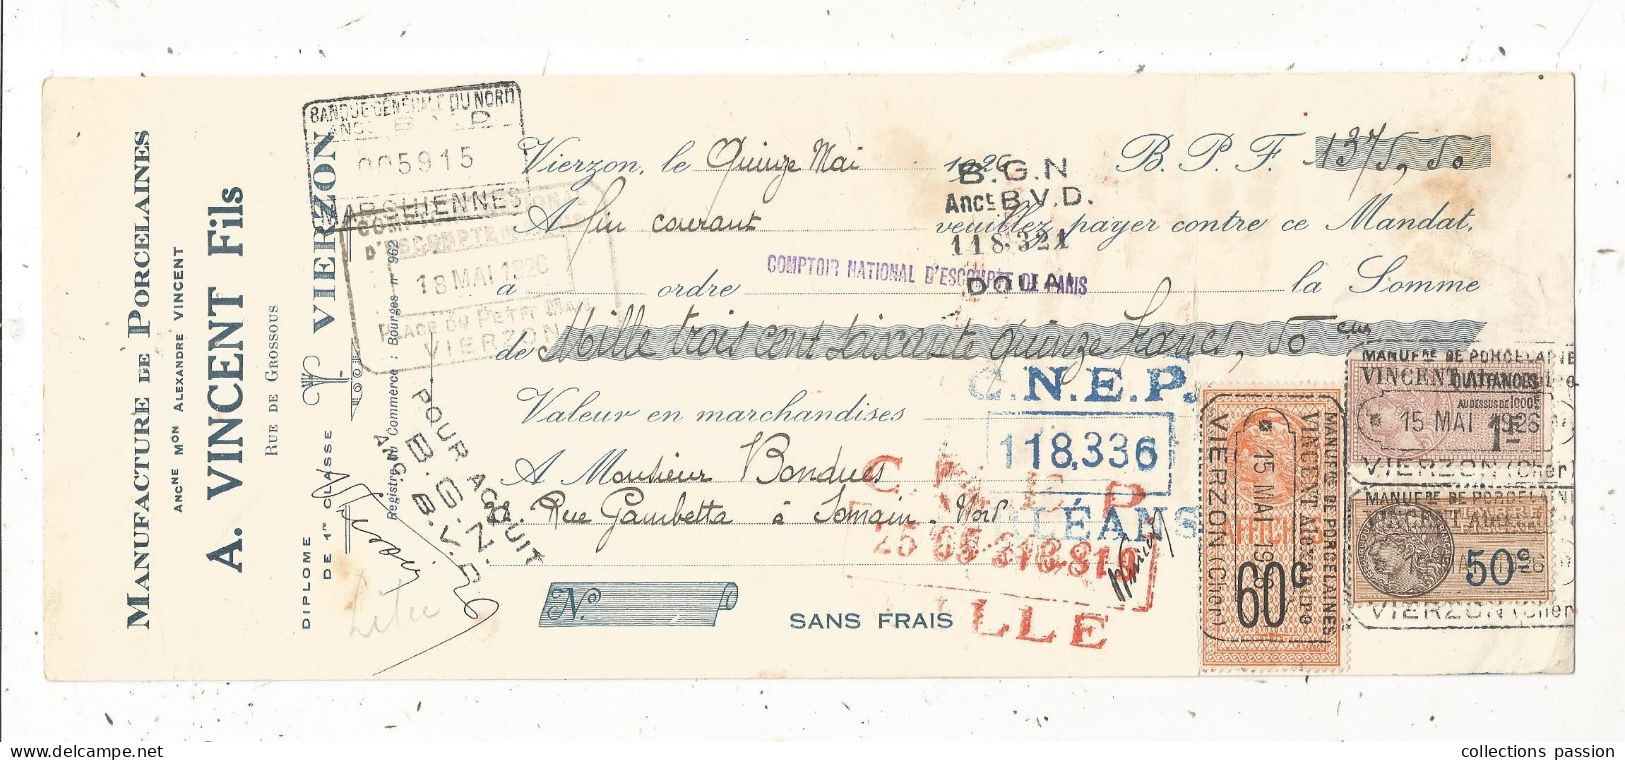 Mandat, Manufacture De Porcelaine, A. VINCENT FILS, VIERZON, 1926, Frais Fr 1.75 E - Bills Of Exchange